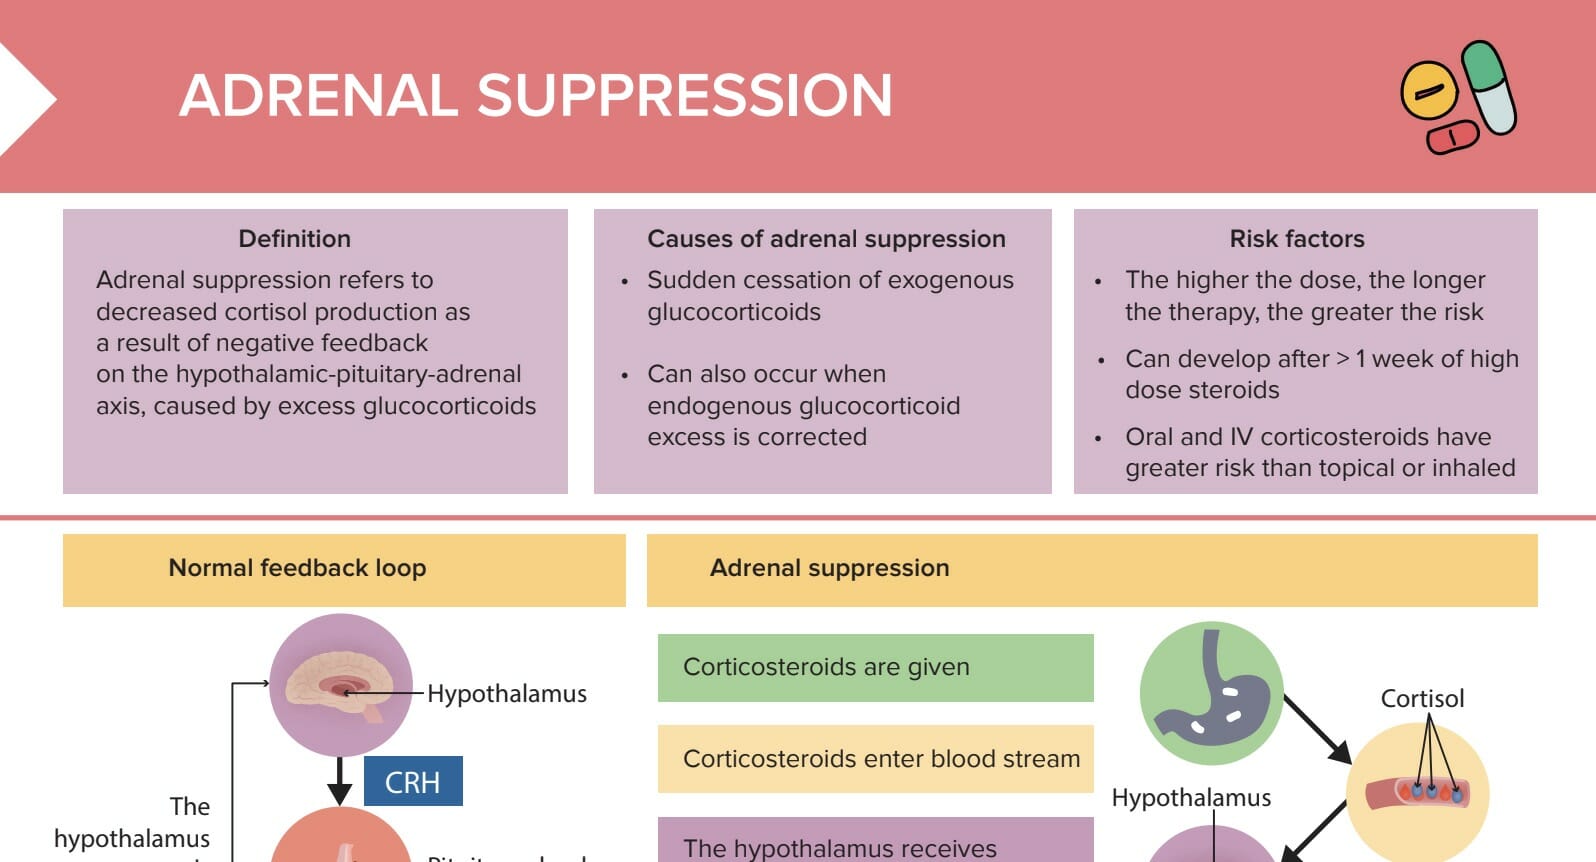 Adrenal suppression